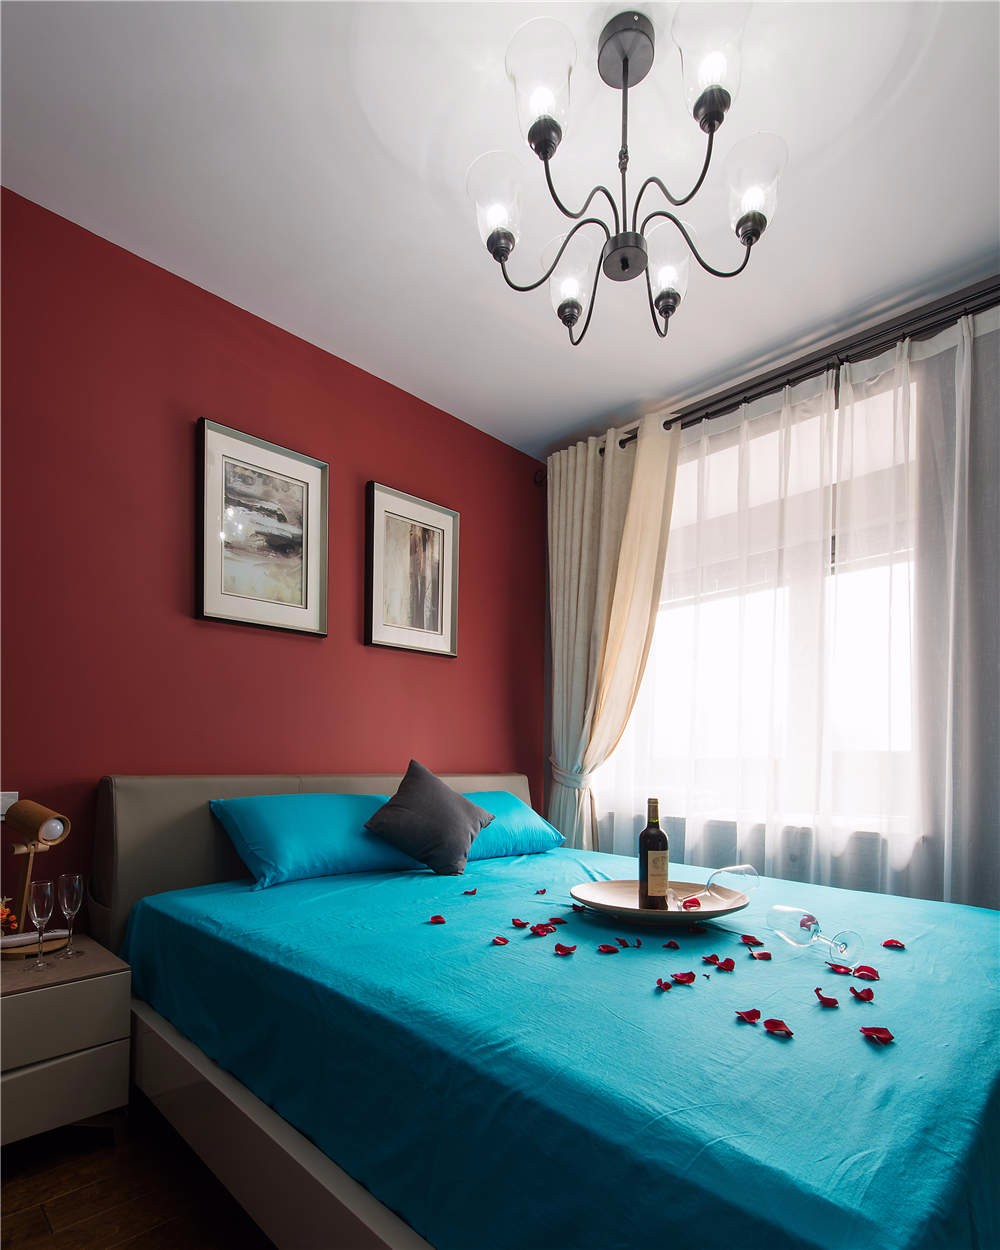 二居室装修,80平米装修,5-10万装修,卧室,混搭风格,卧室背景墙,蓝色,红色